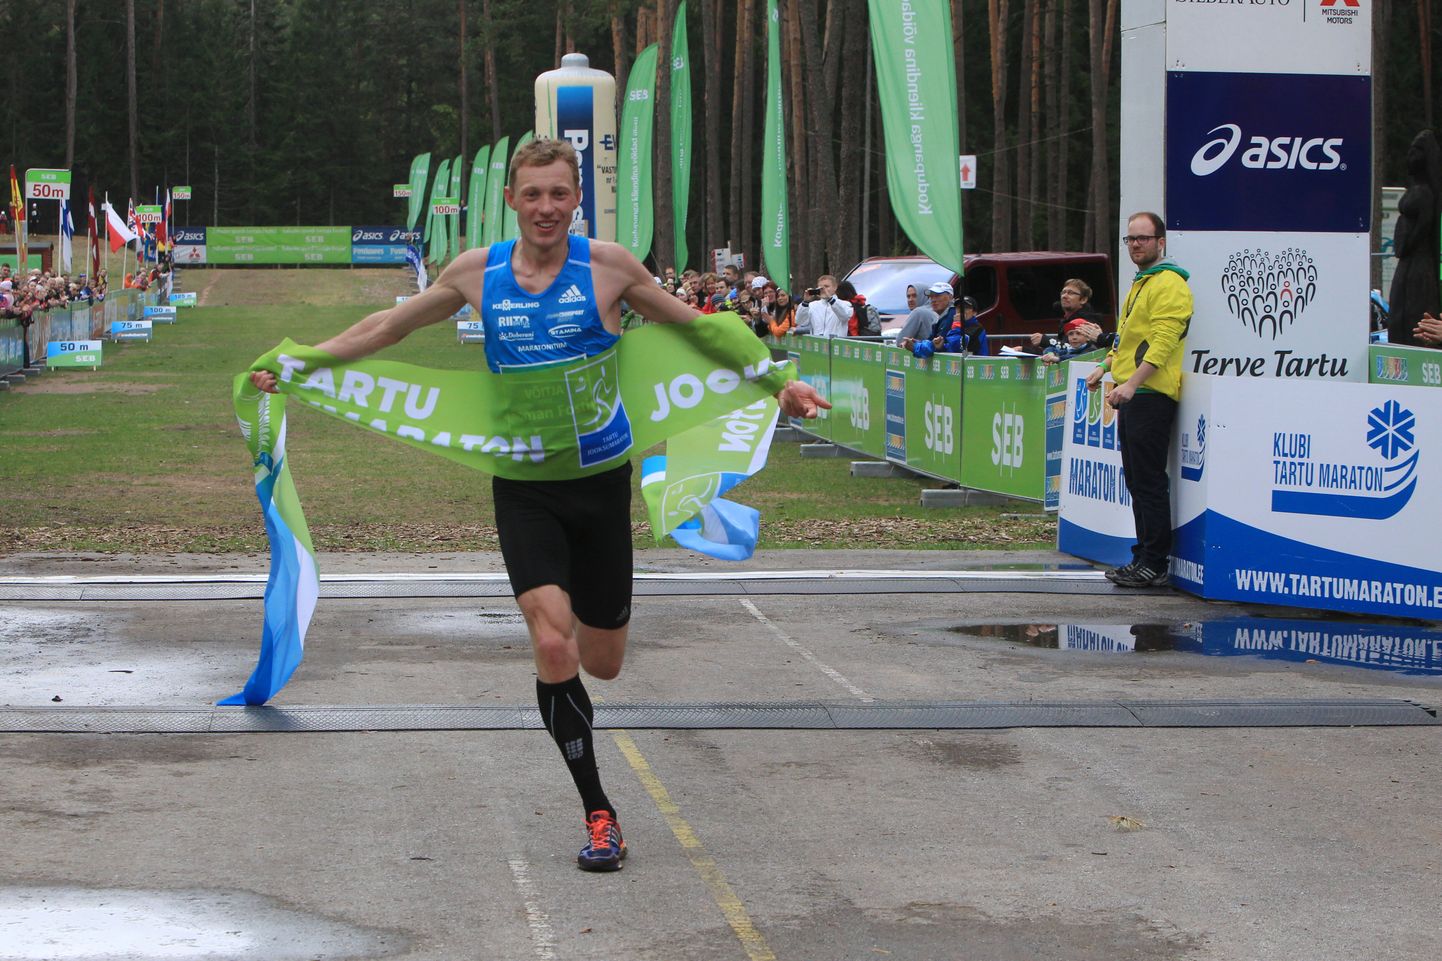 Roman Fosti ei väsi võitmast. Nii nagu ta triumfeeris nädala eest SEB Tartu jooksumaratonil, võitis ta ka täna Sauga valla jooksul.